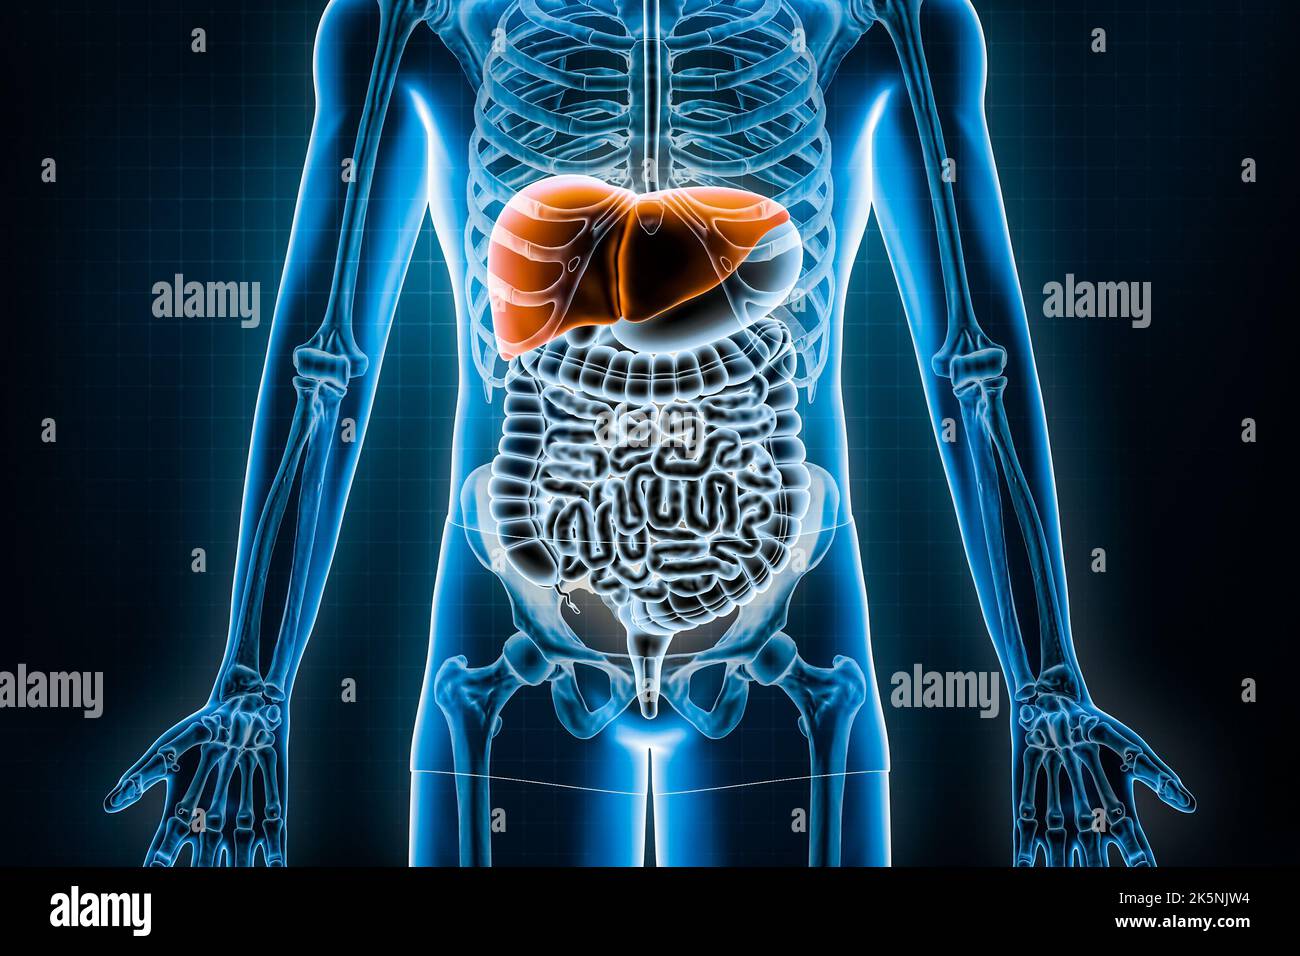 Rappresentazione di fegato 3D. Vista anteriore o anteriore dell'apparato digerente umano e del tratto gastrointestinale o dell'intestino. Anatomia, medicina, biologia, Foto Stock